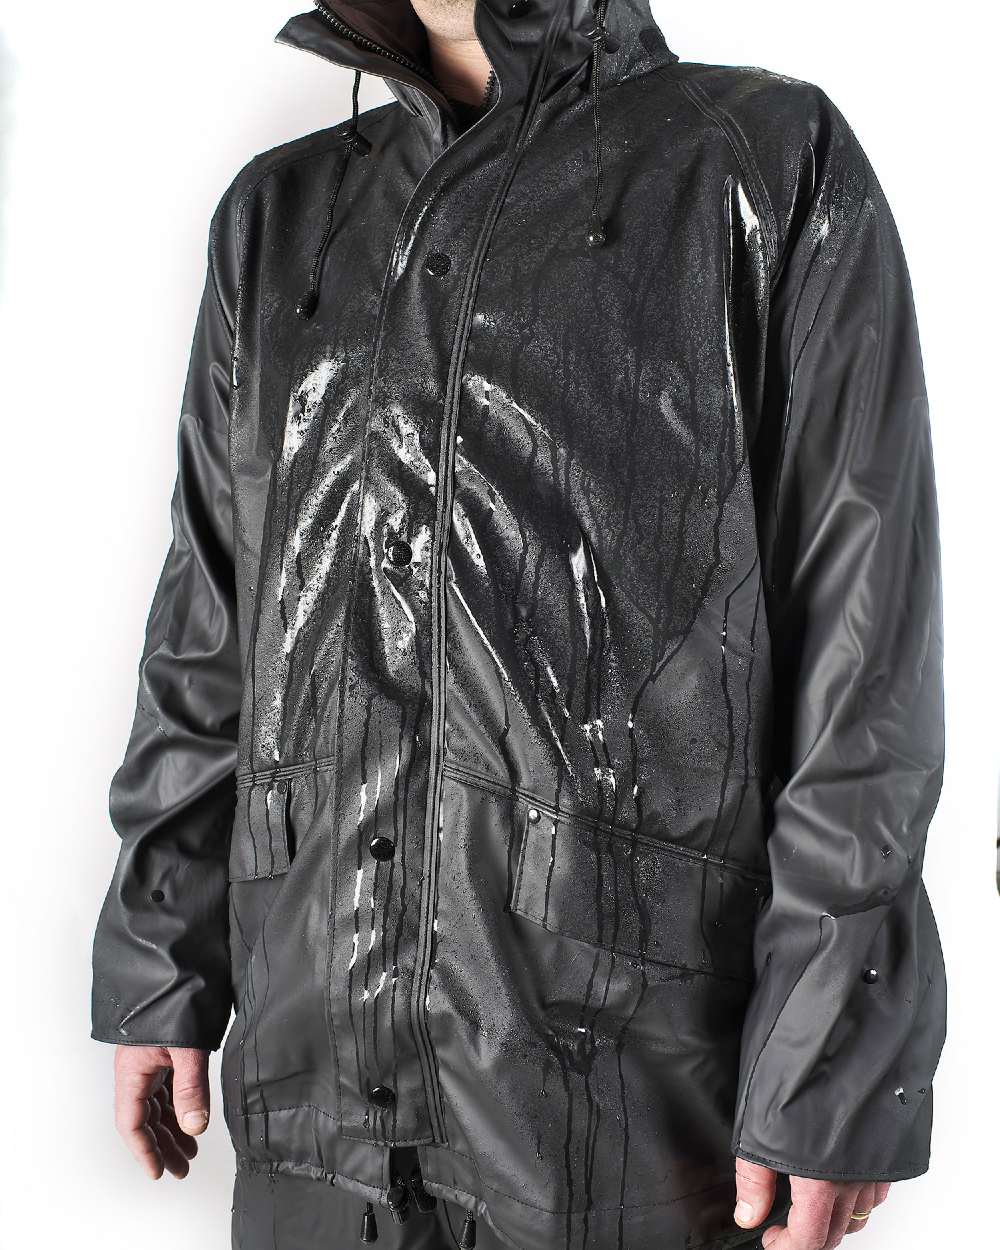 Fort Airflex Fortex Breathable Waterproof Jacket in Black 